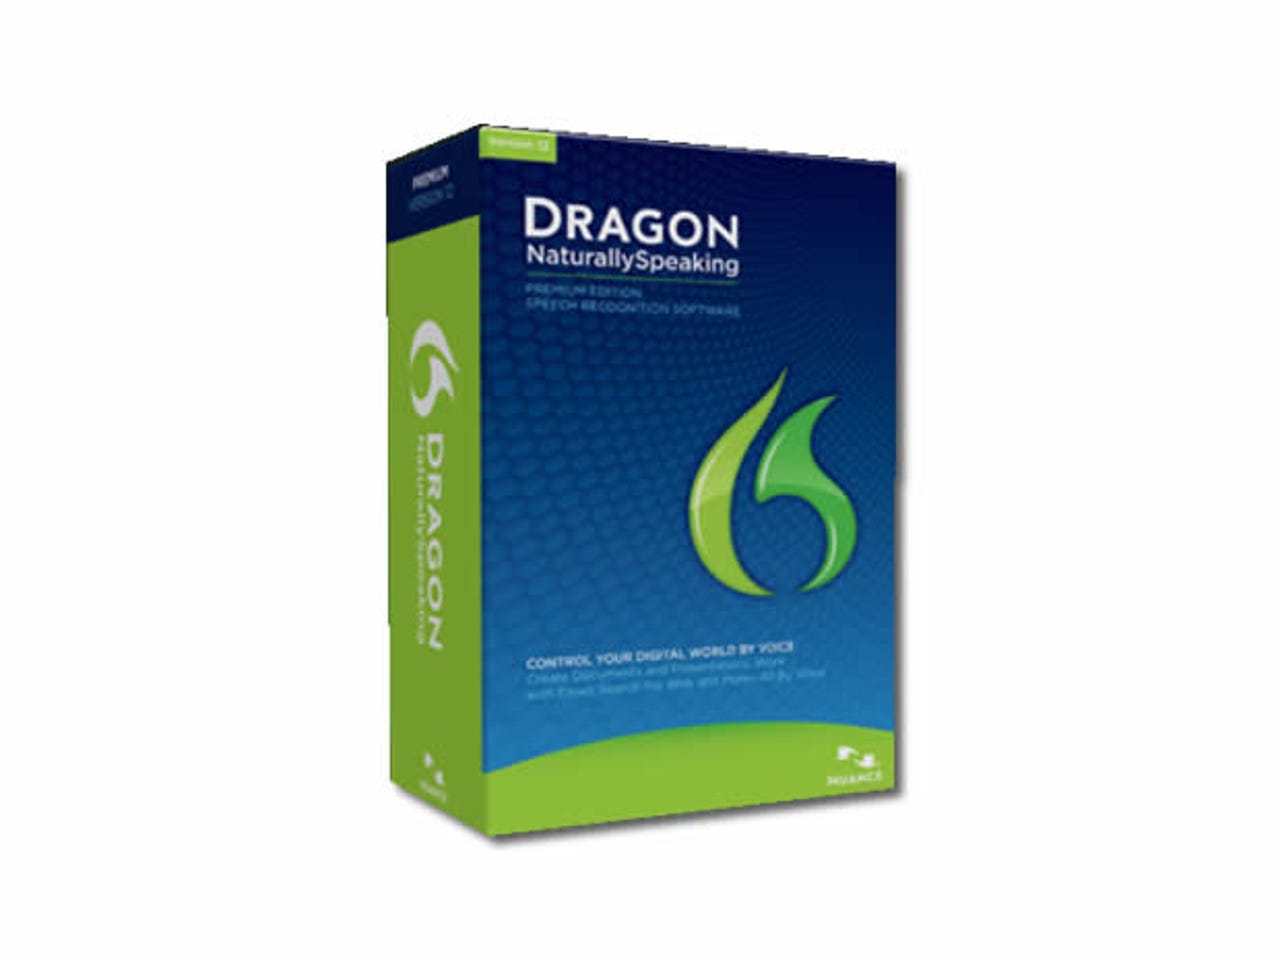 dragon-12-box.jpg